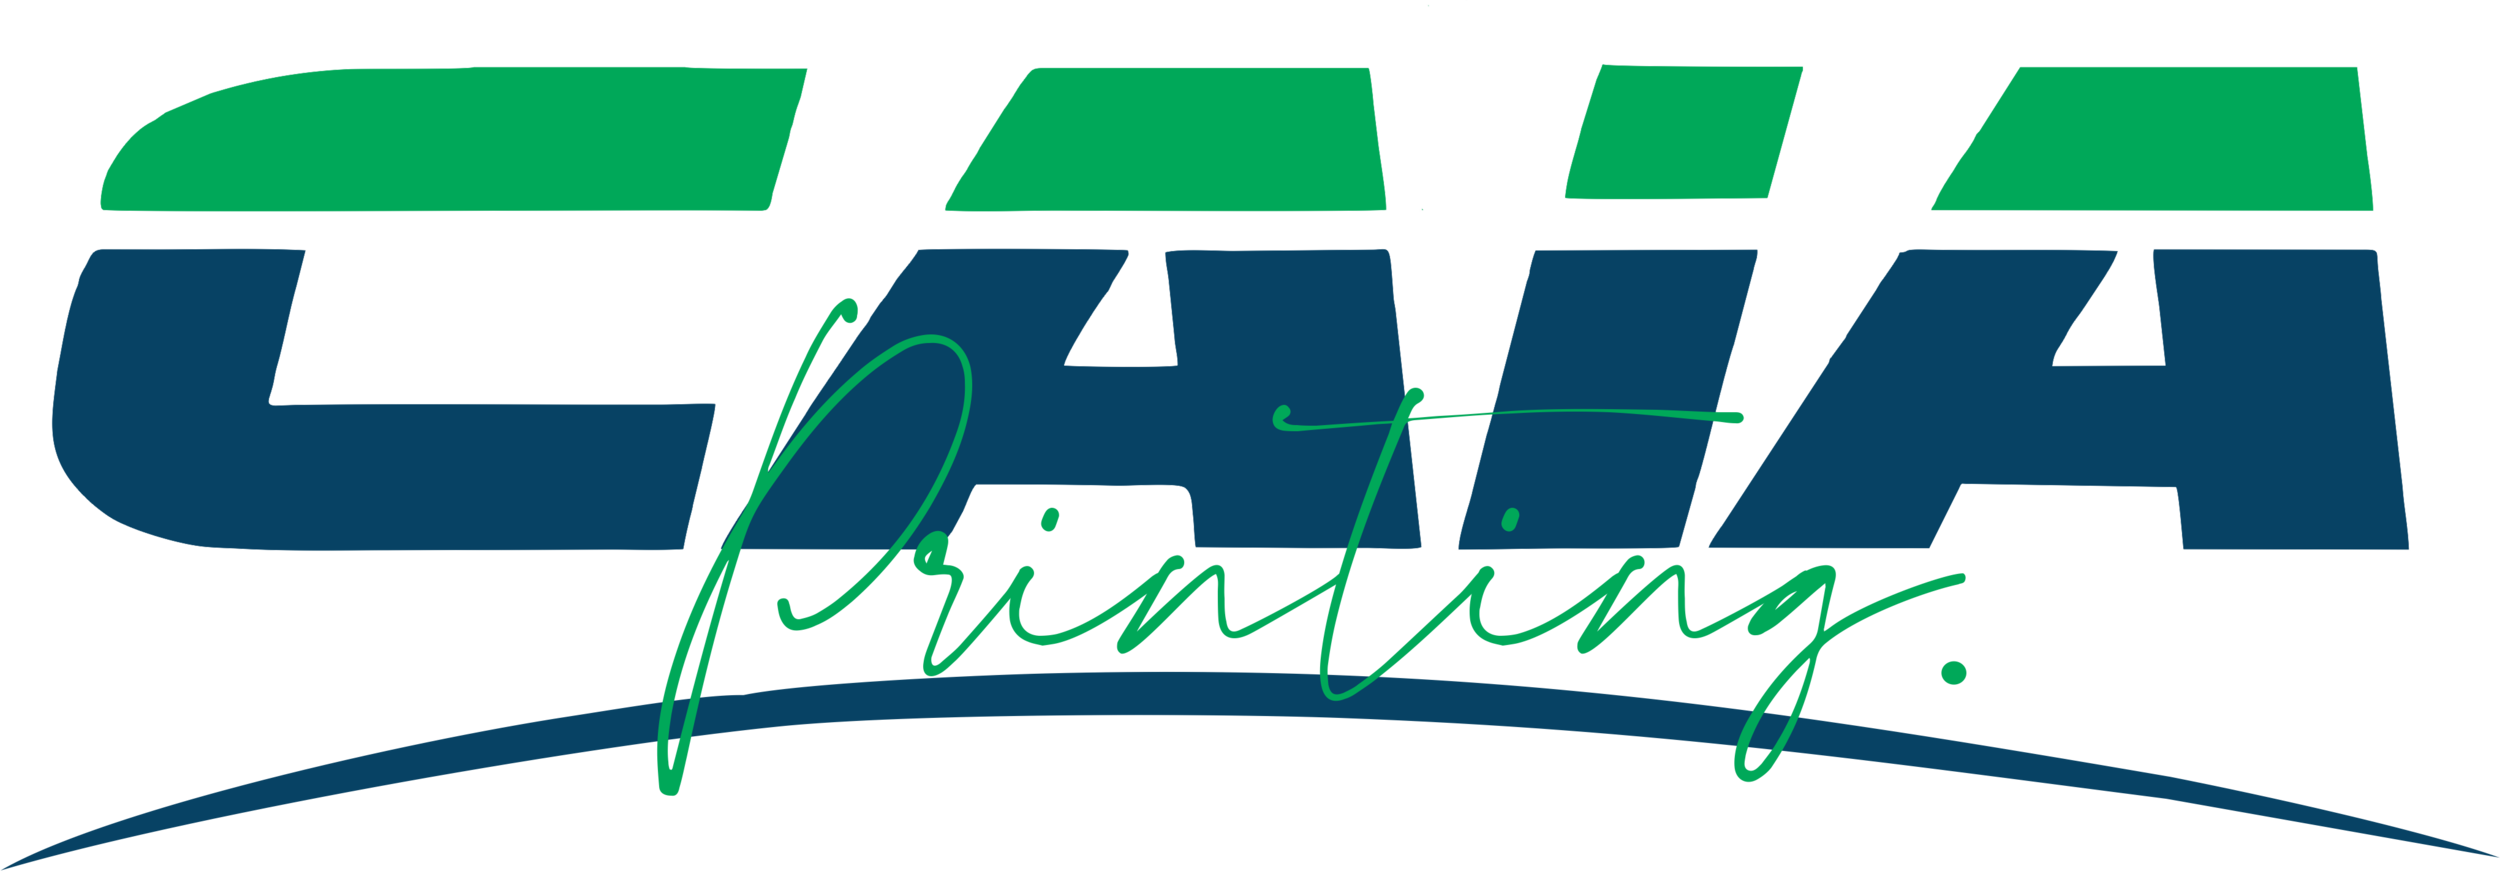 CAIA Printing Logo .png